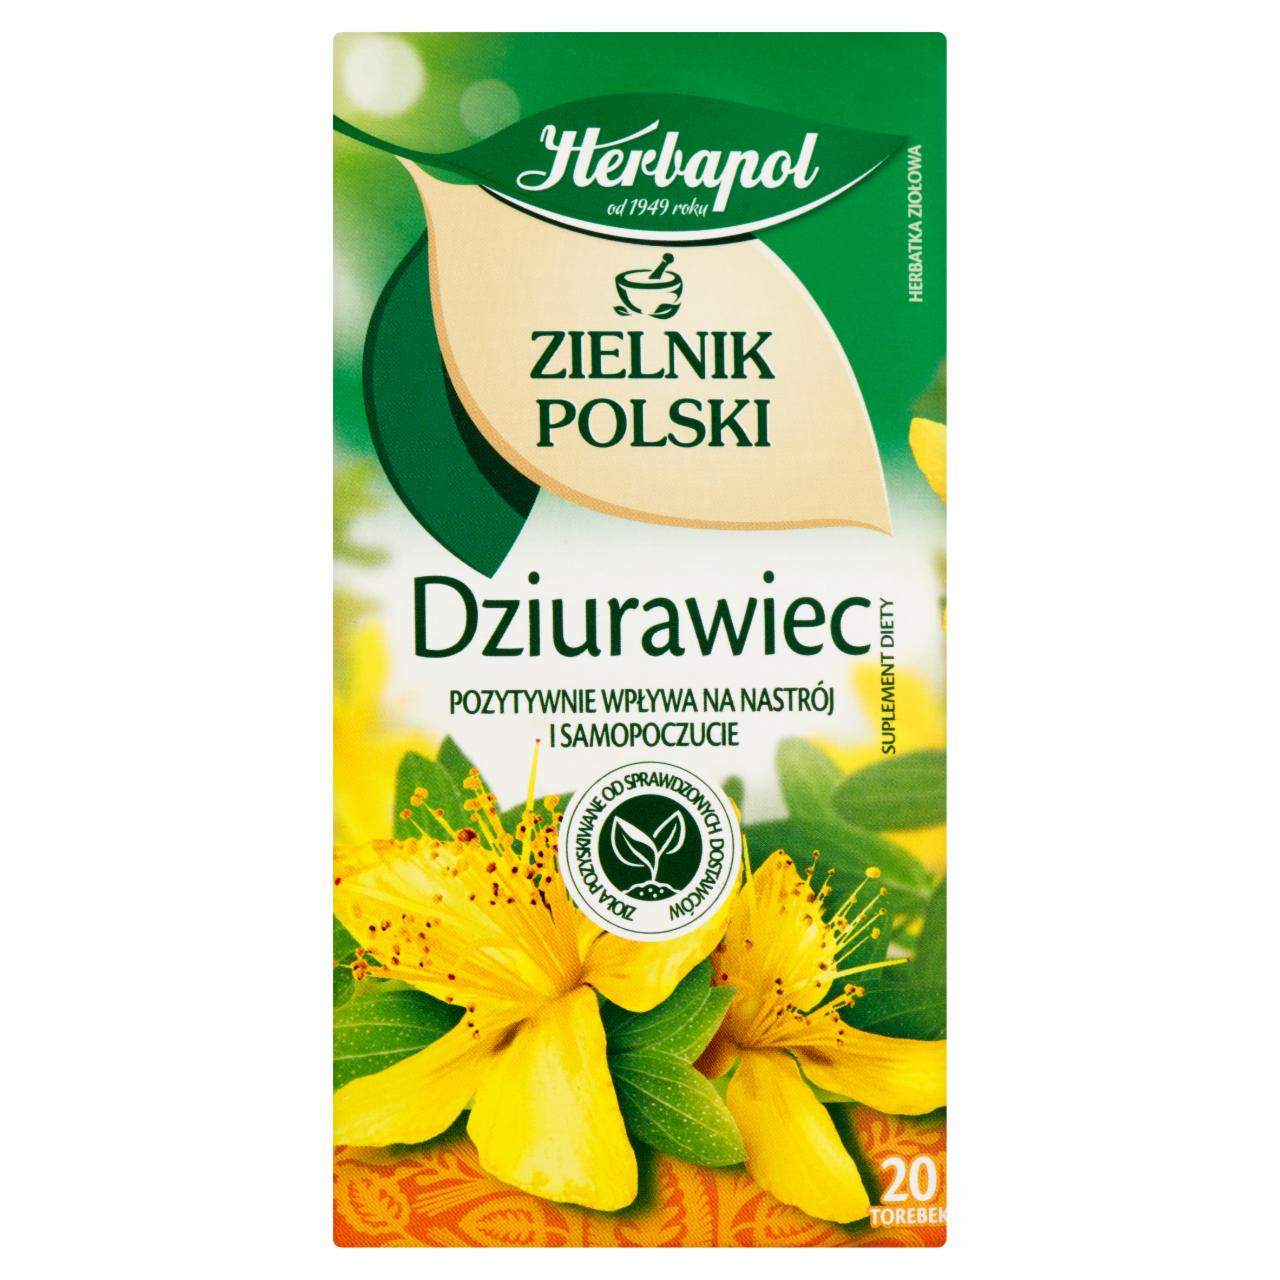 Zdjęcia - Herbapol Zielnik Polski Dziurawiec Herbatka ziołowa Suplement diety 30 g (20 x 1,5 g)